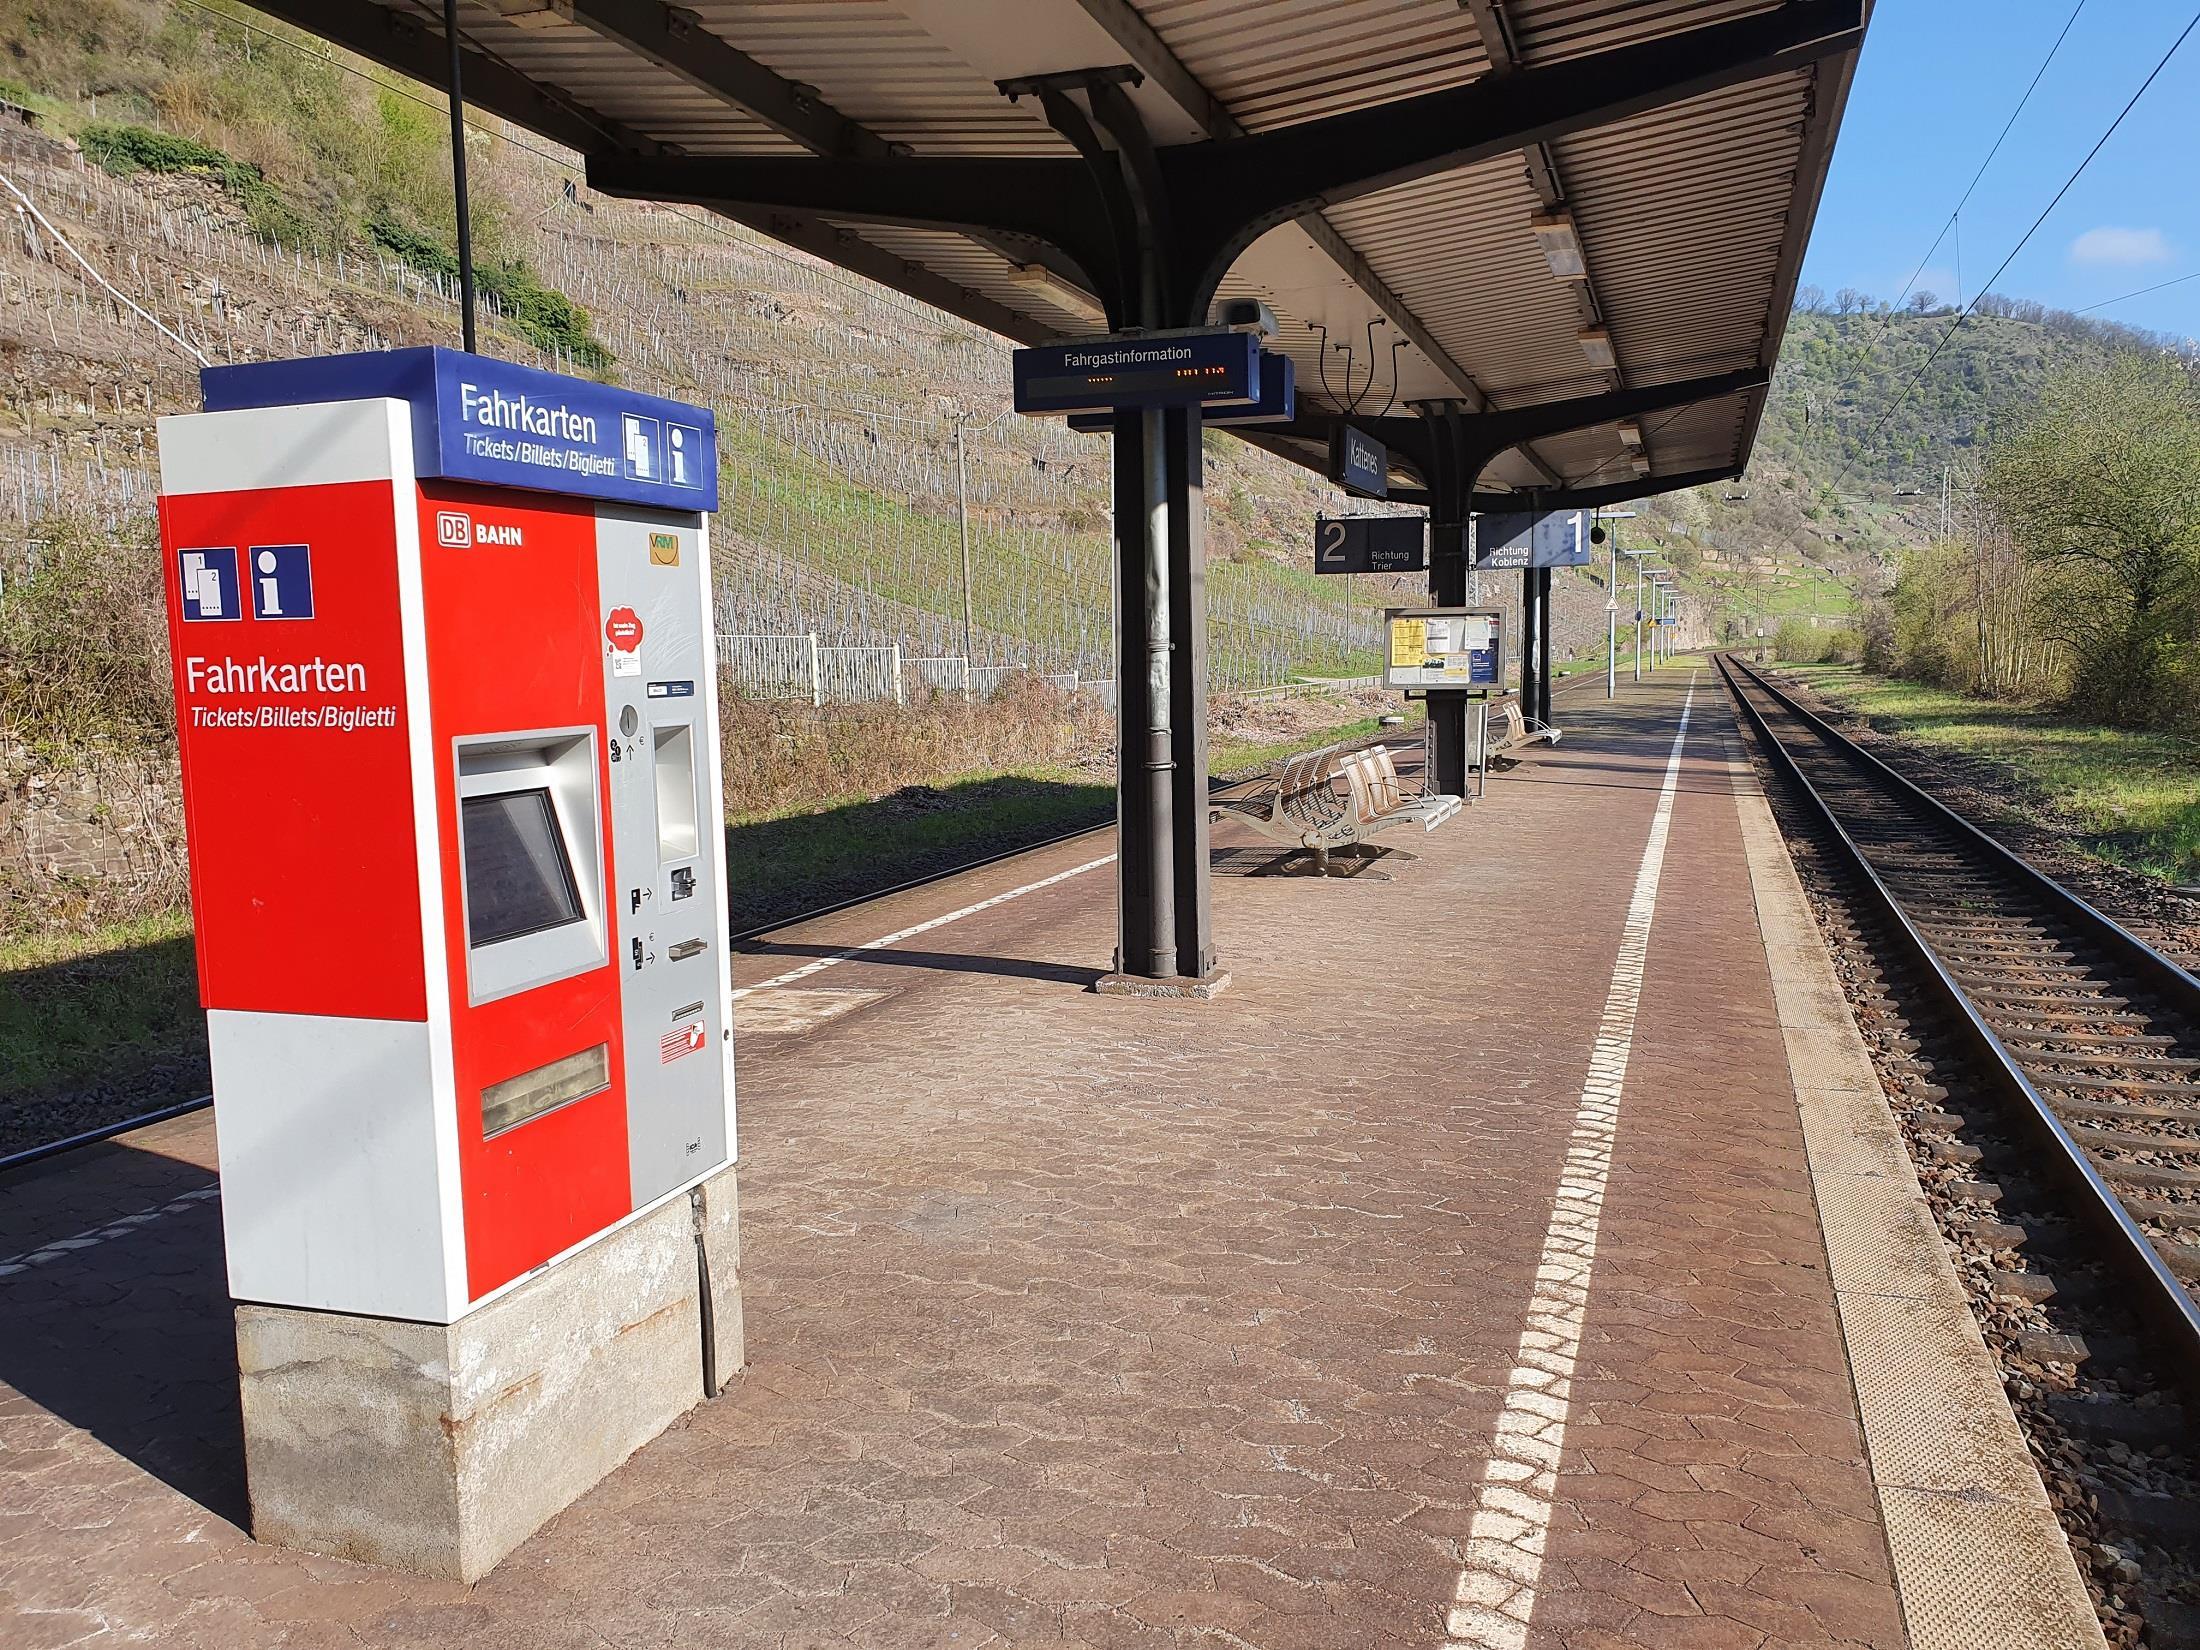 Fahrkarten Automat am Bahnsteig